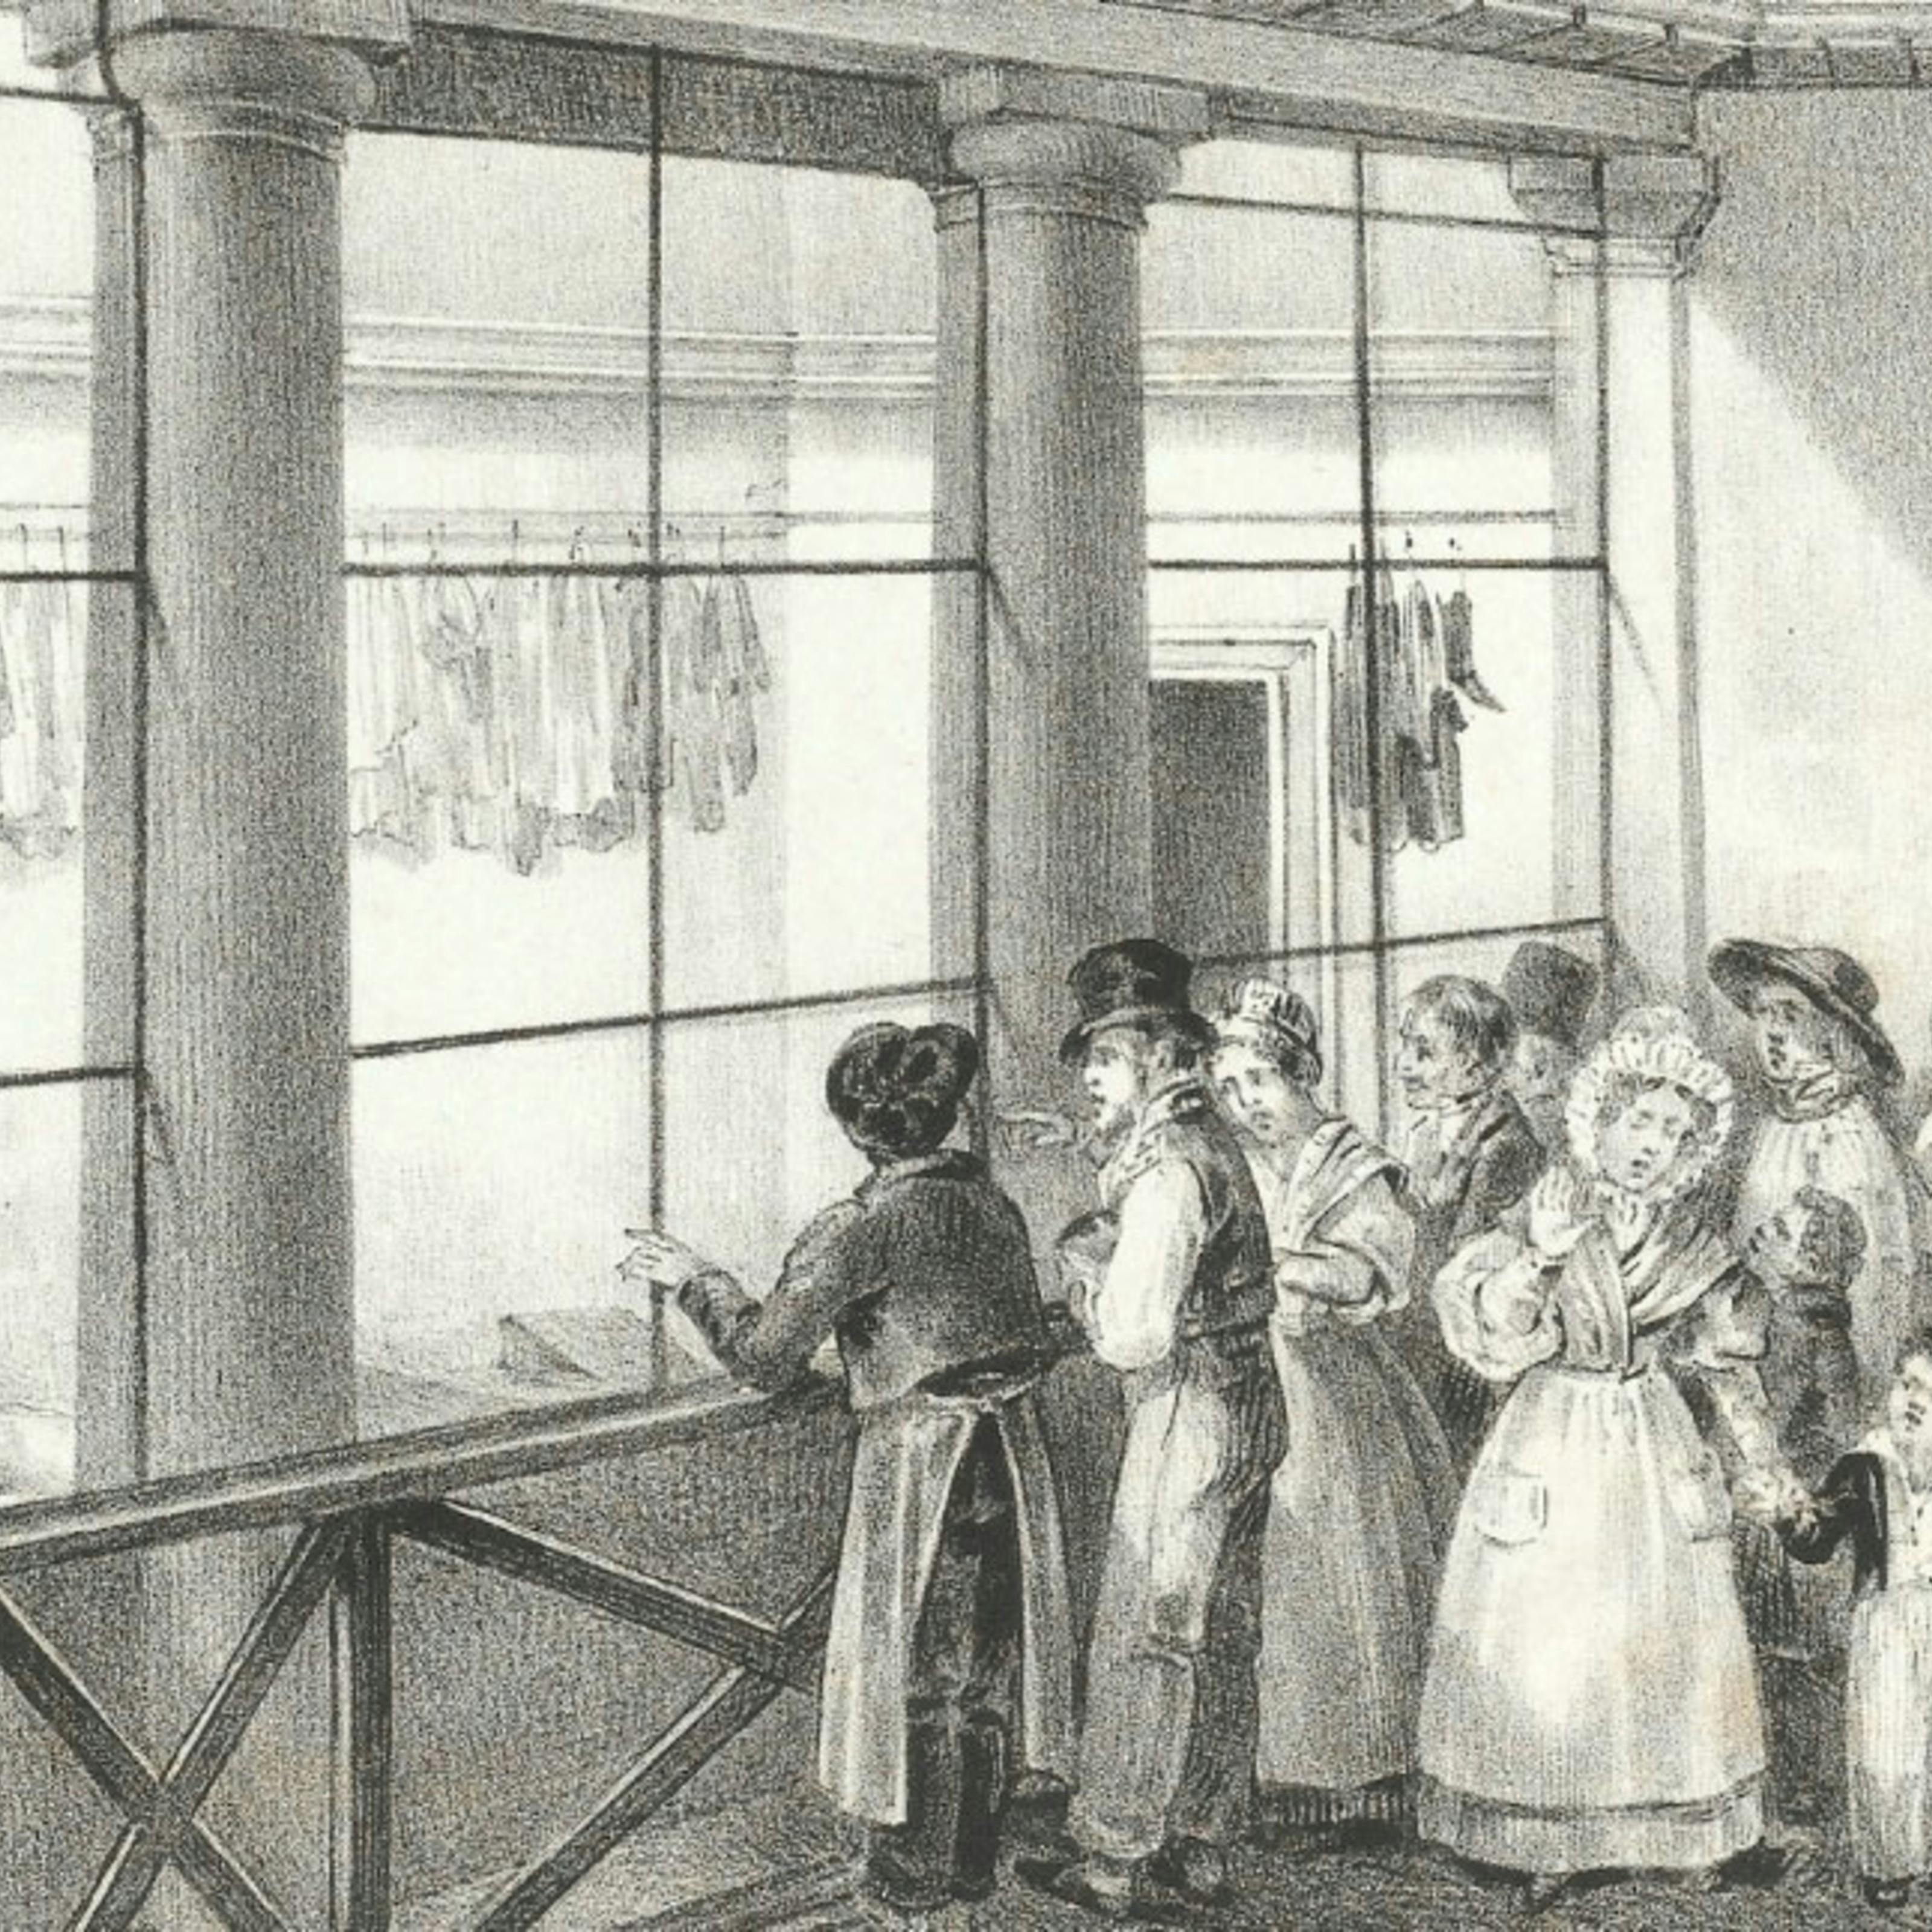 Черно-белая гравюра с изображением людей в XIX веке, смотрящих на трупы в морге в Париже.